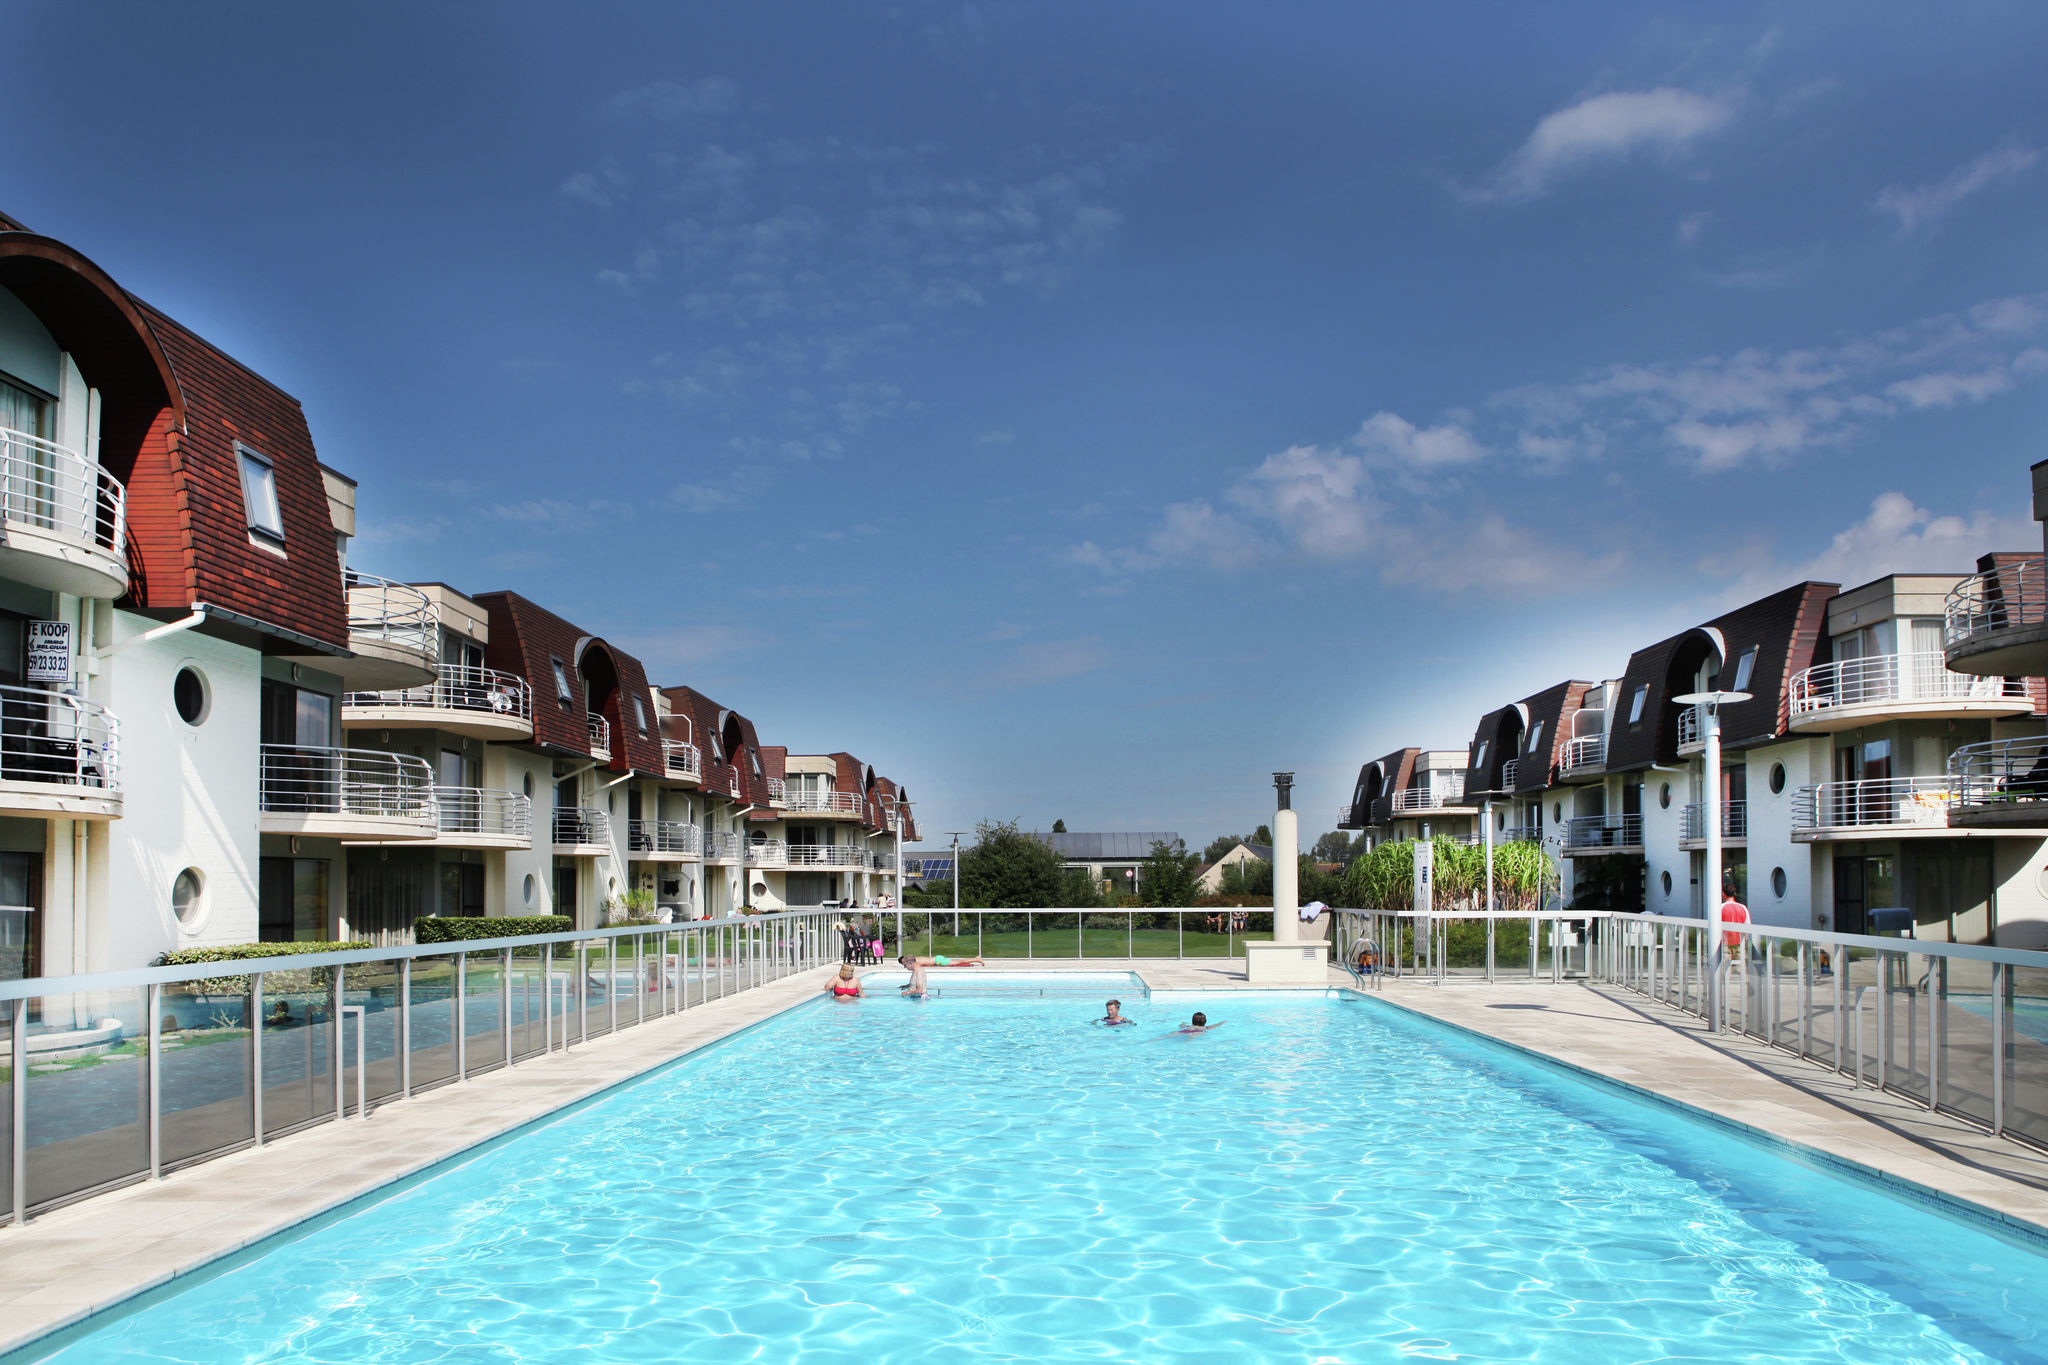 Appartement moderne avec piscine près de la mer à Bredene